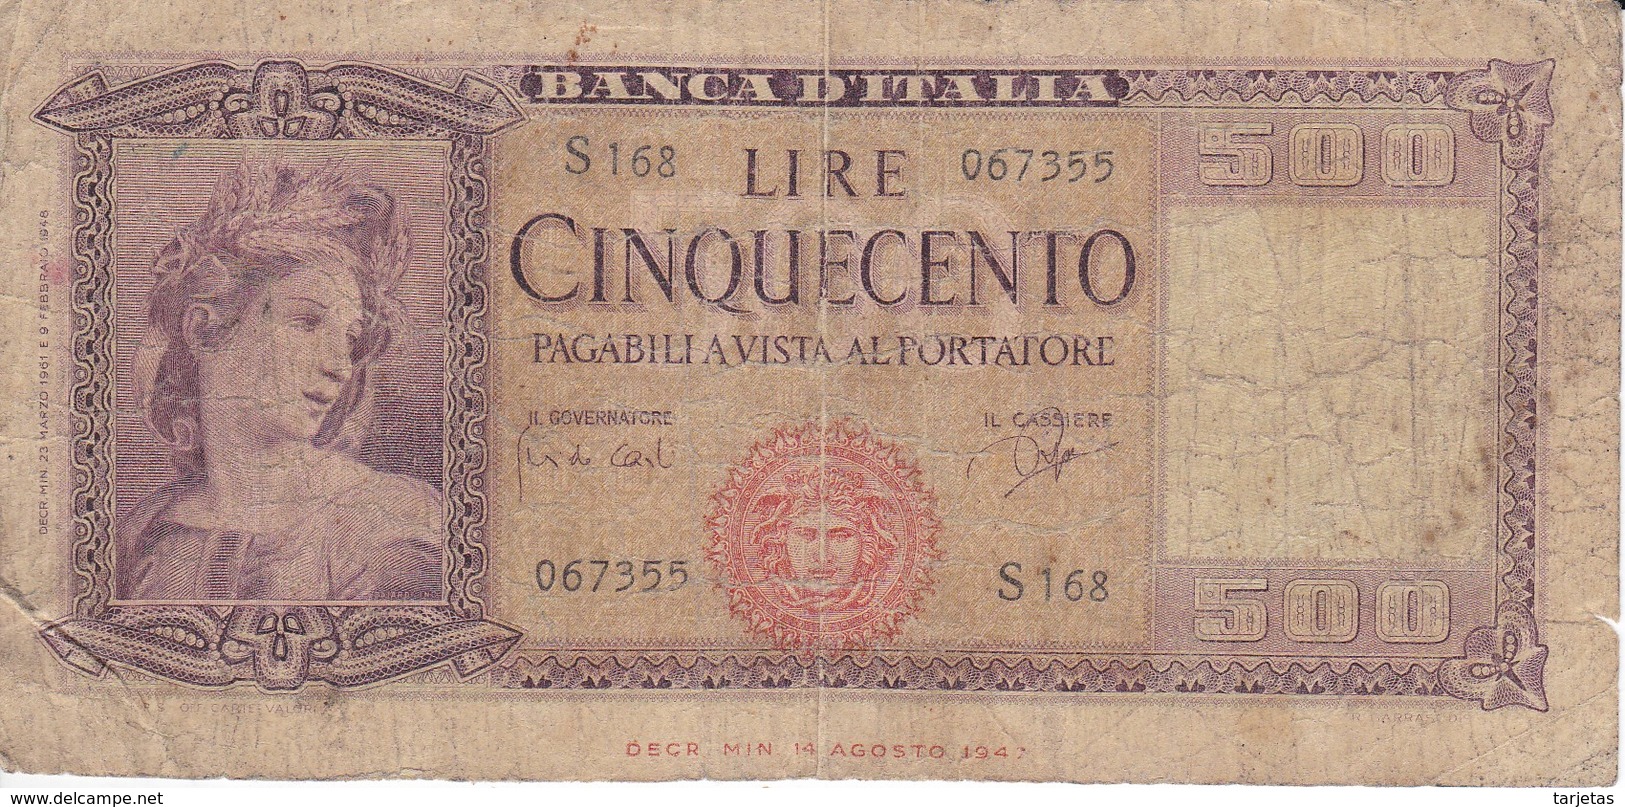 BILLETE DE ITALIA DE 500 LIRAS DEL AÑO 1961  (BANKNOTE) - 500 Lire